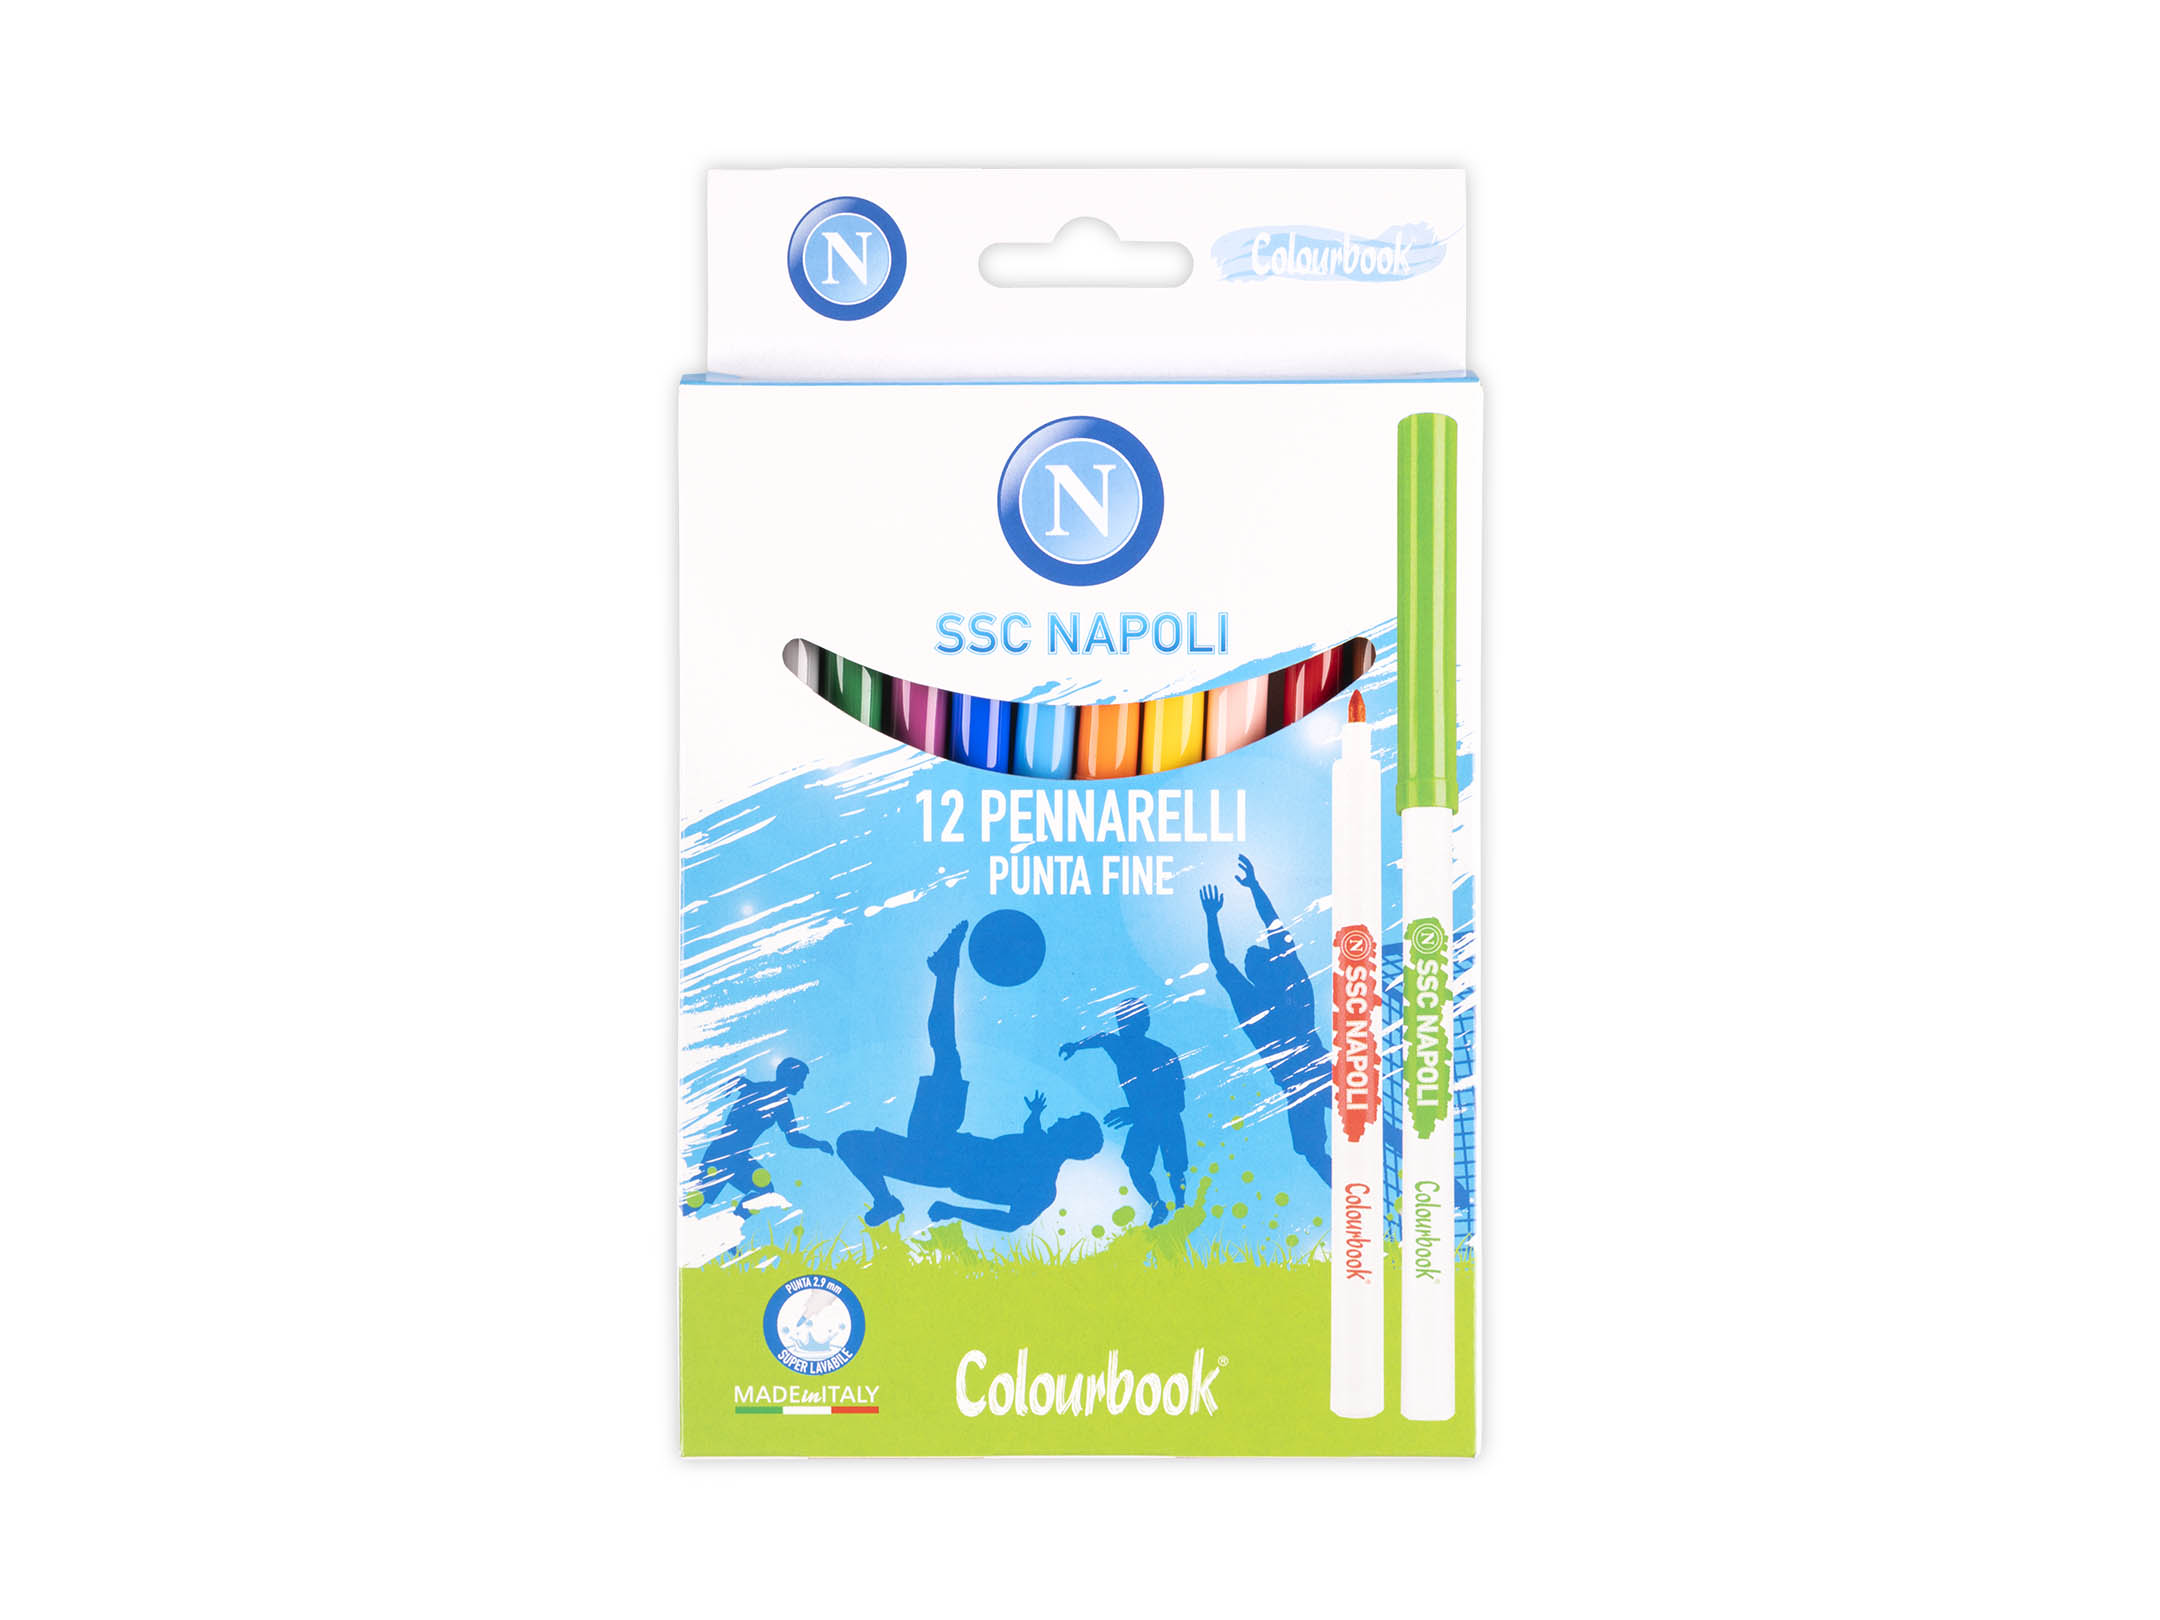 Pennarelli lavabili per bambini 12 colori - SSC Napoli